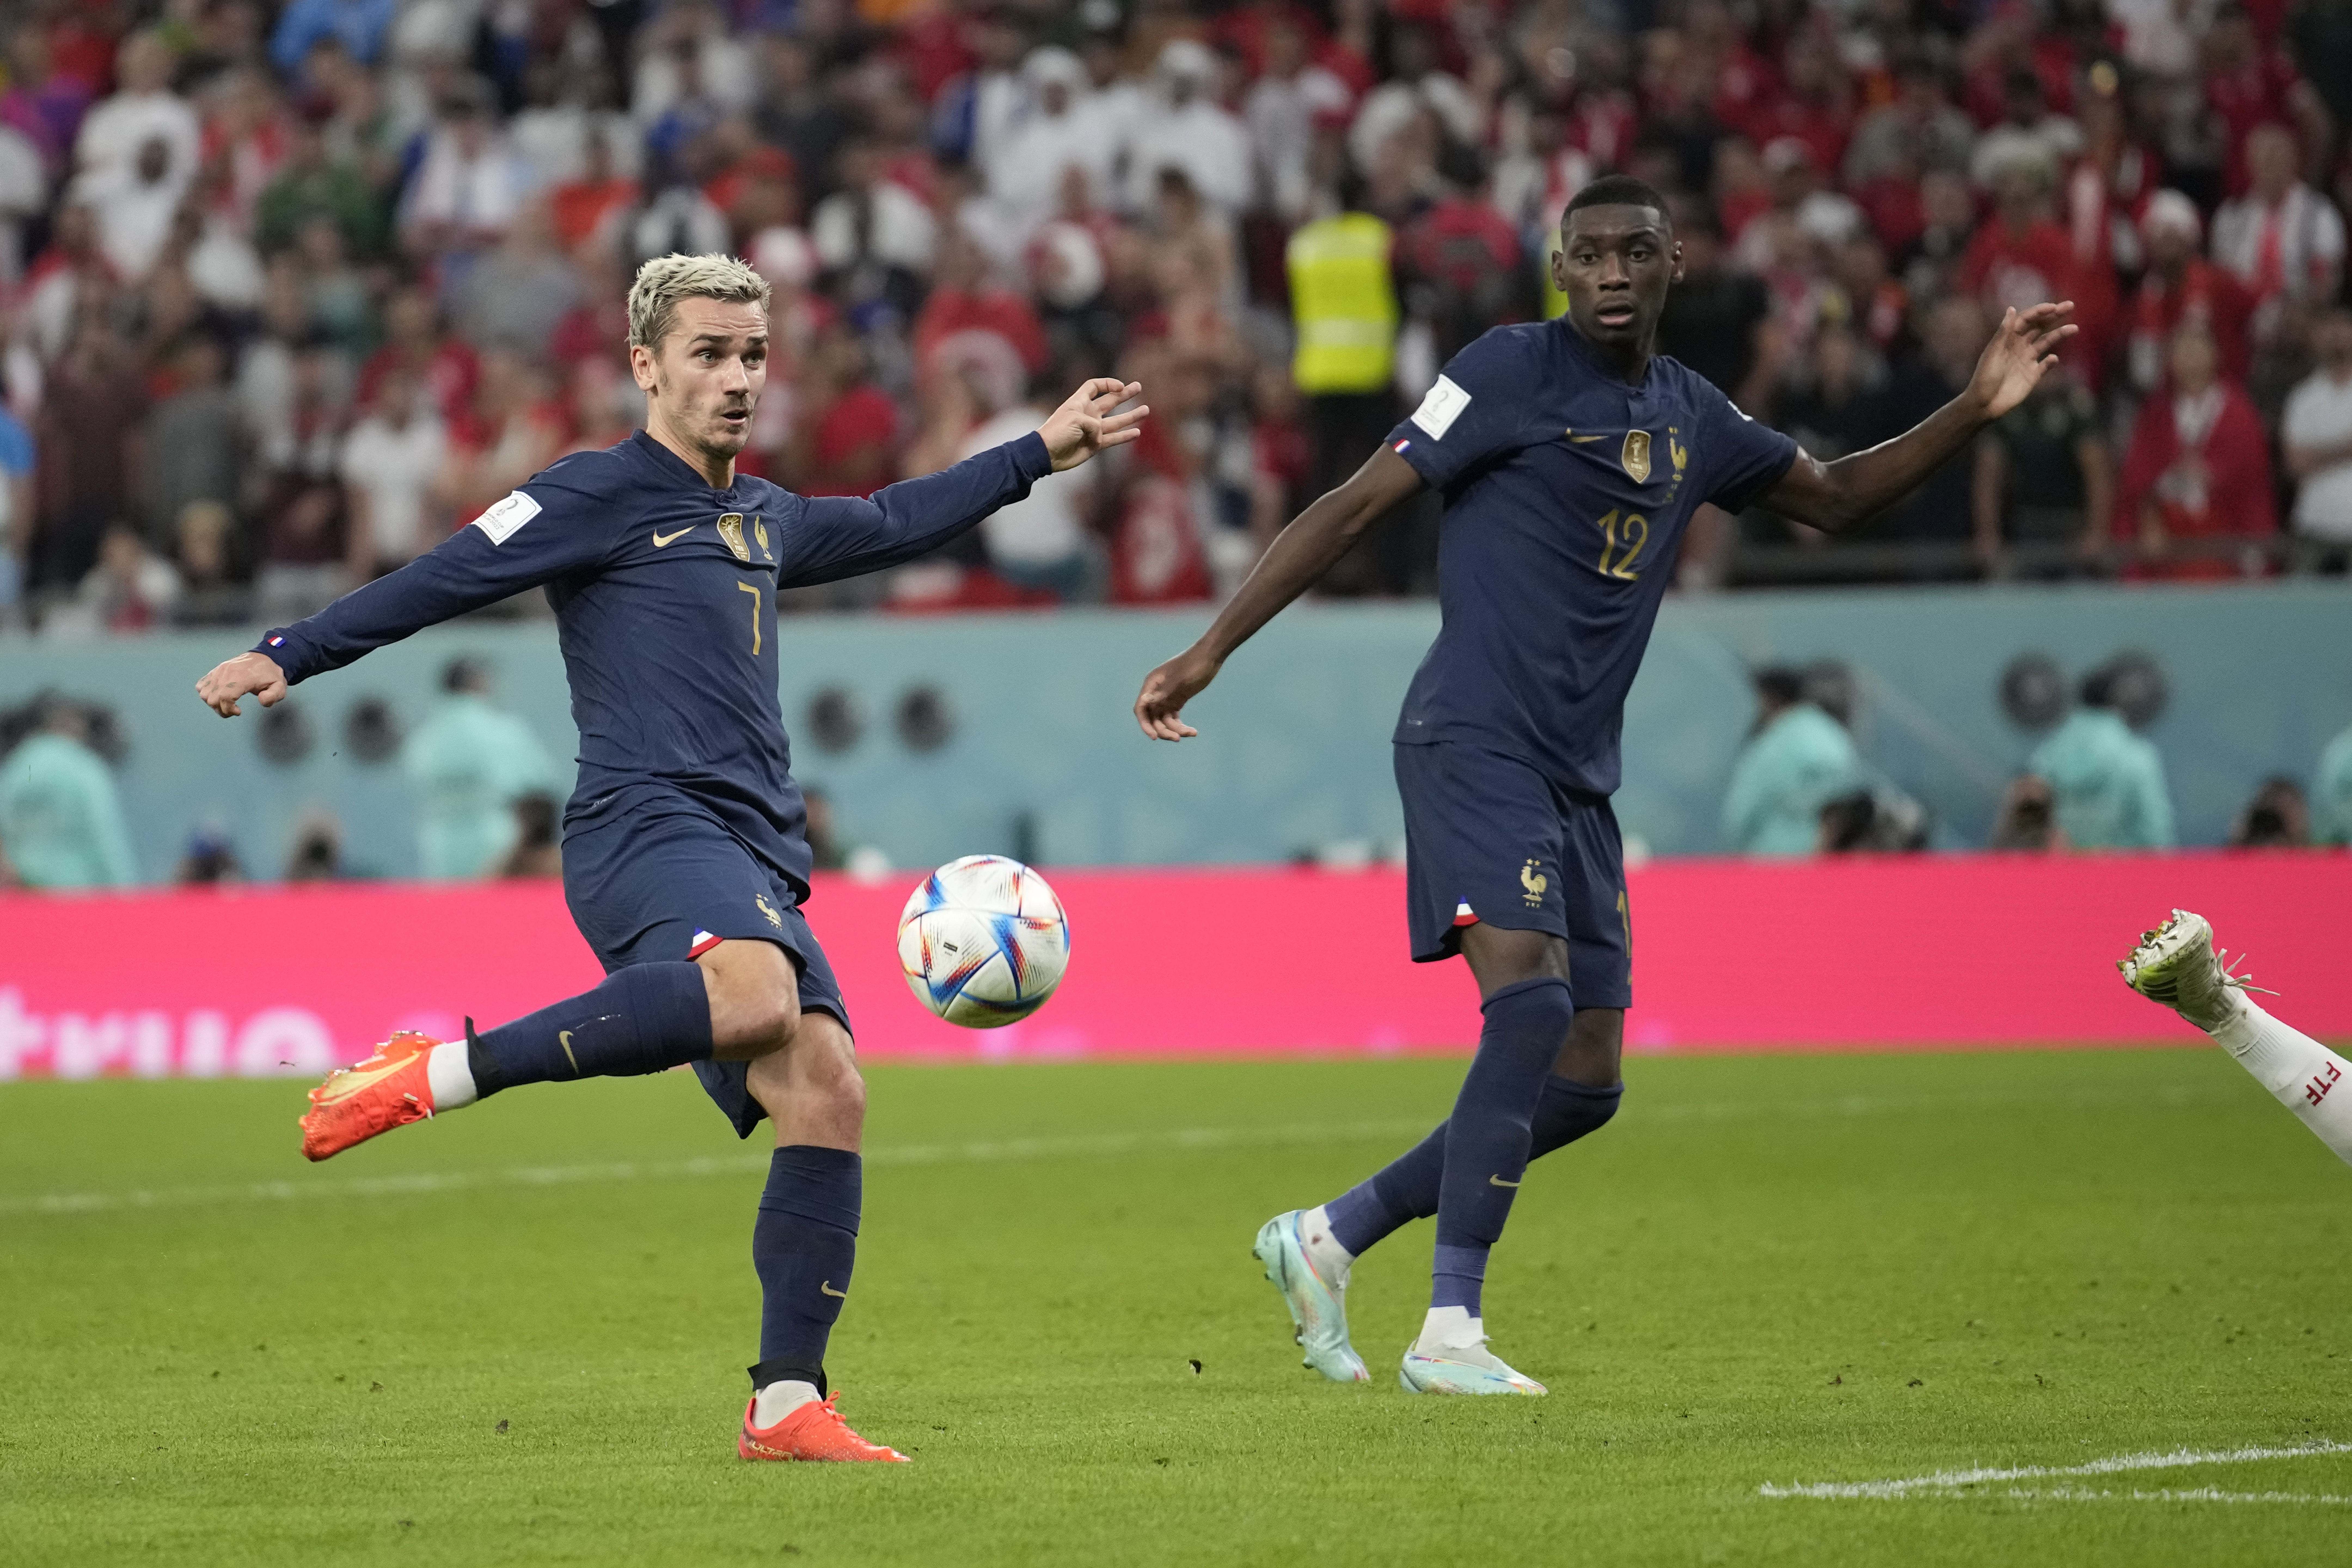 Telemundo drops World Cup ad campaign for Qatar 2022